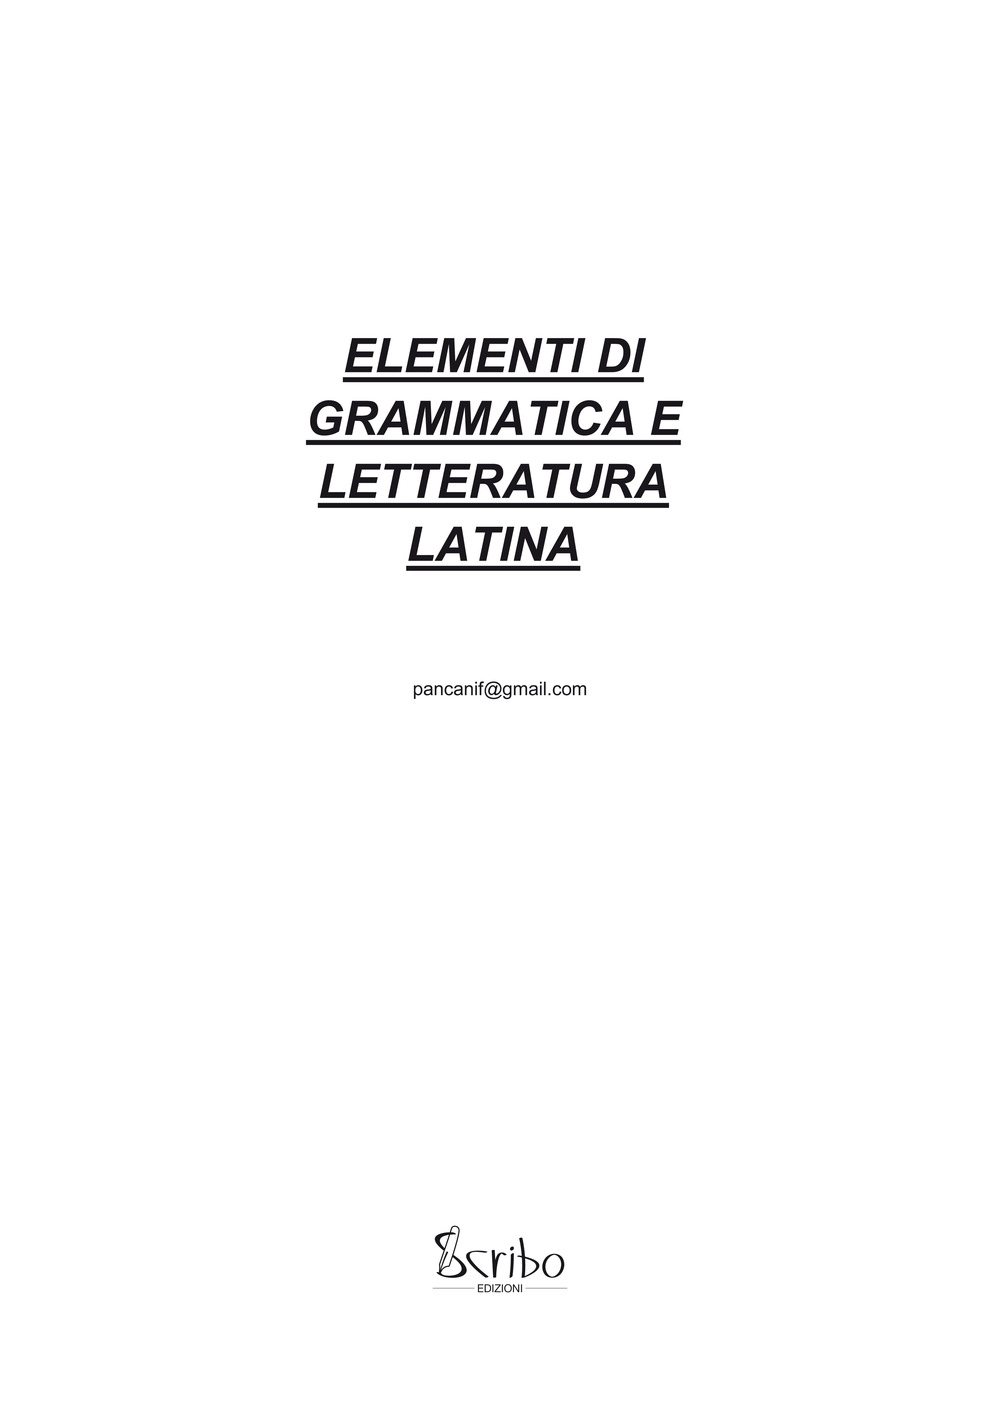 Elementi di grammatica e letteratura latina